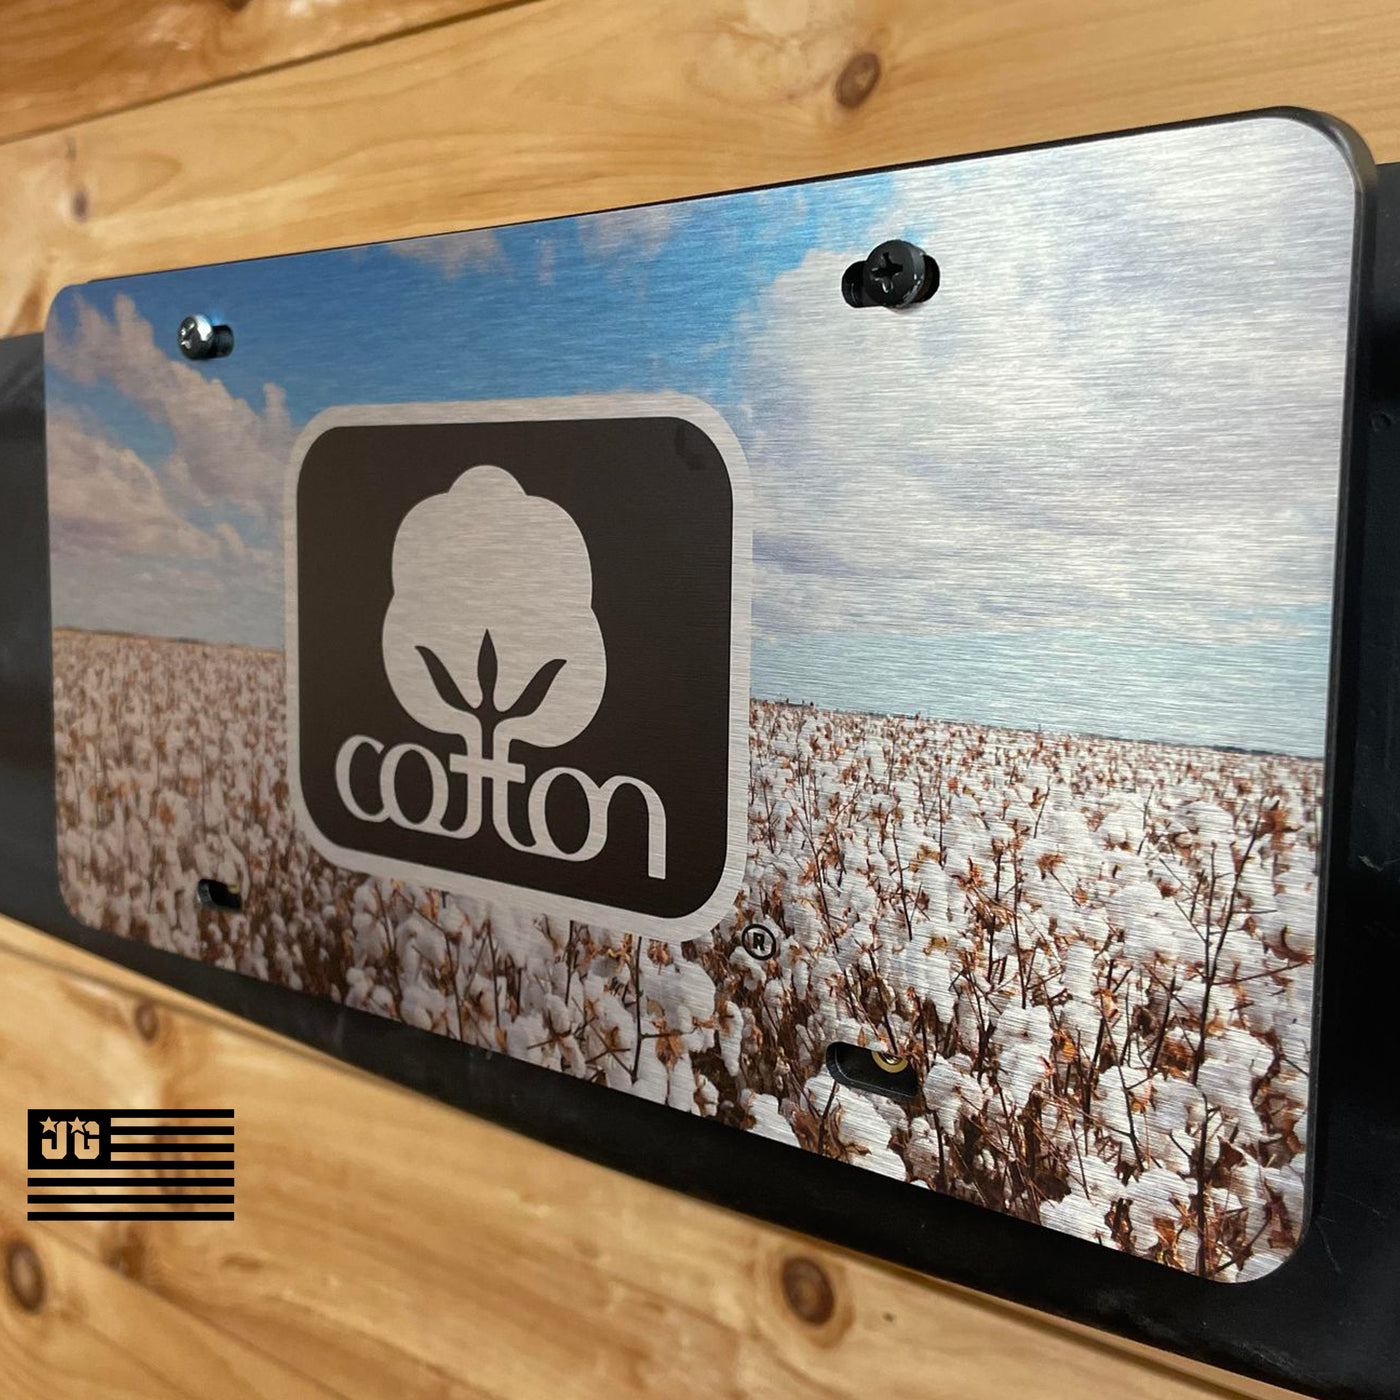 Cotton Tag Cotton Field 